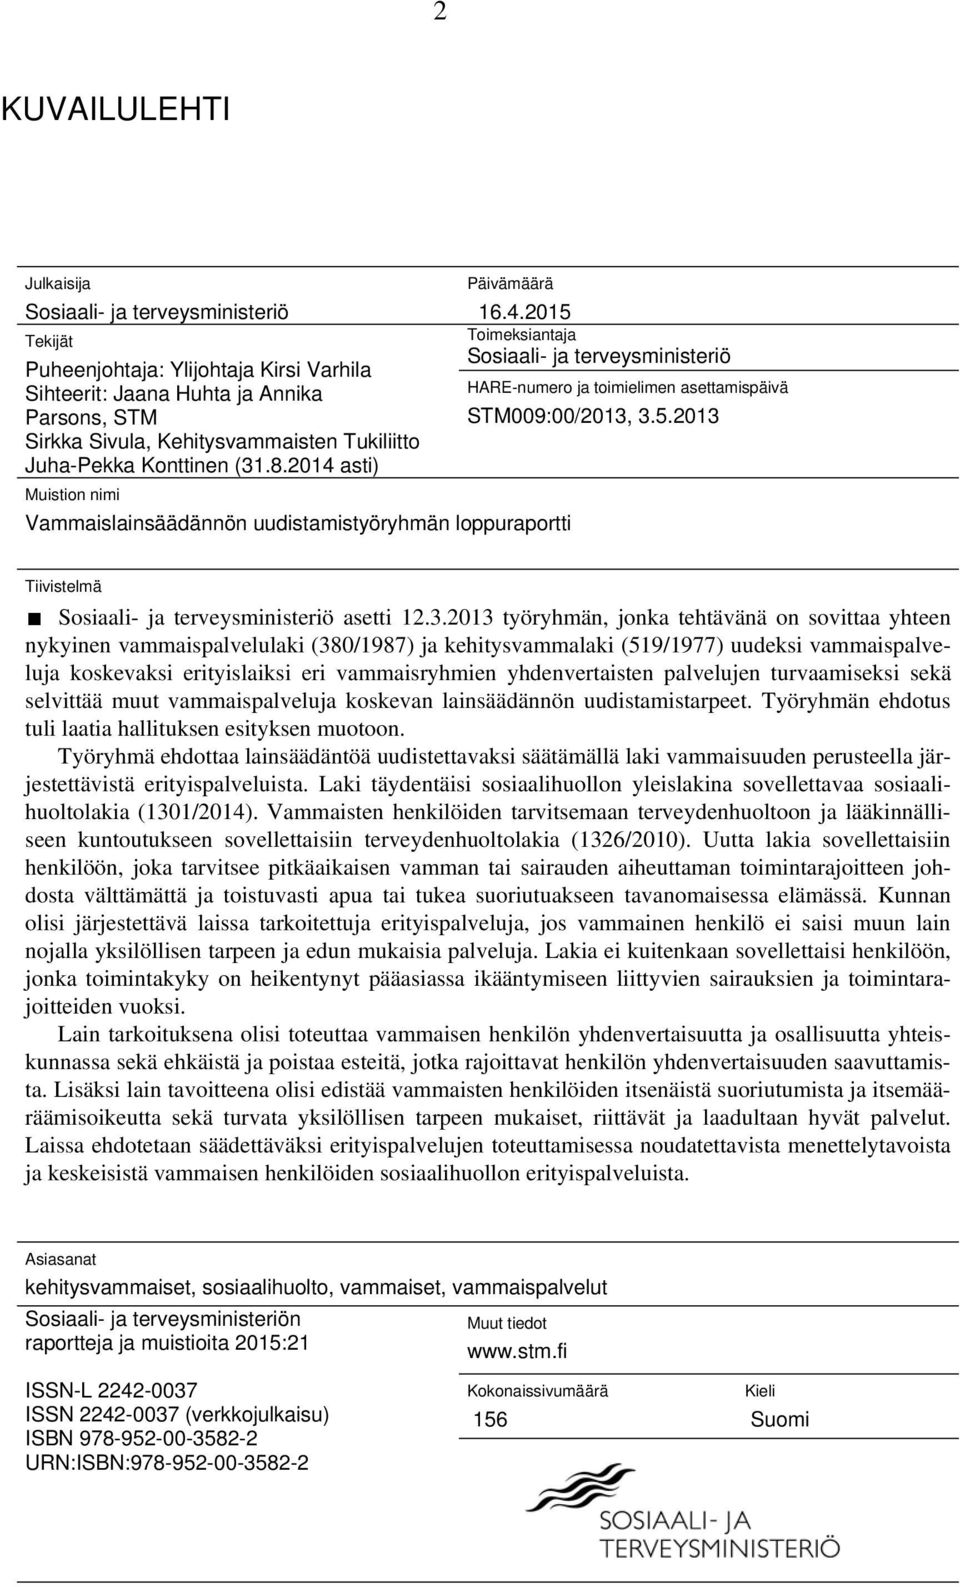 STM009:00/2013, 3.5.2013 Sirkka Sivula, Kehitysvammaisten Tukiliitto Juha-Pekka Konttinen (31.8.